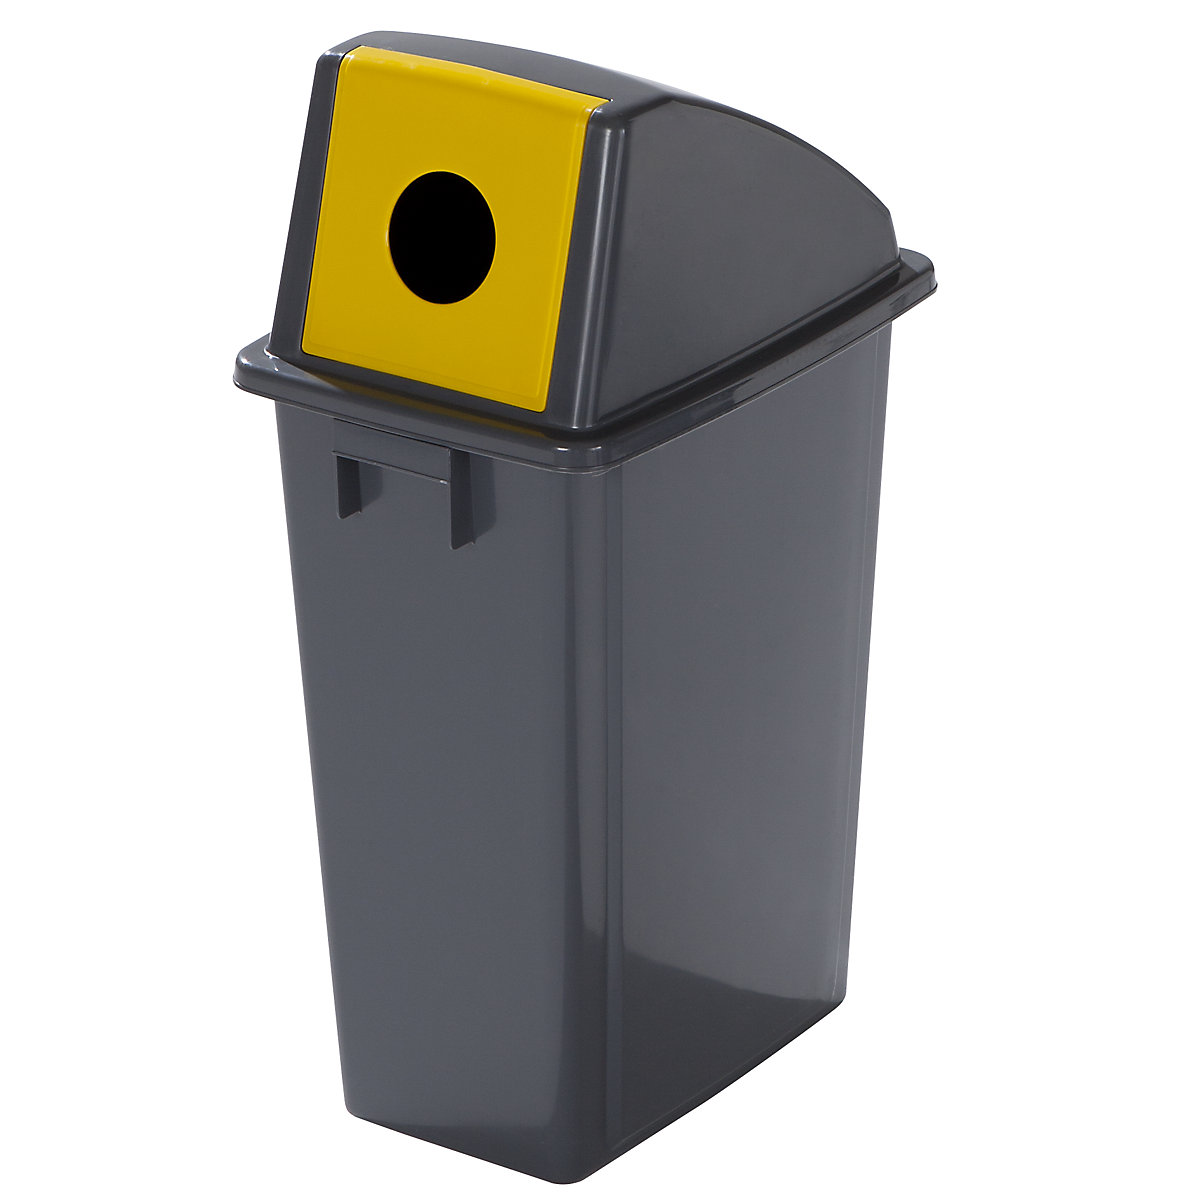 Coletor de materiais recicláveis robusto com tampa, volume 60 l, tampa alta, abertura de inserção-4